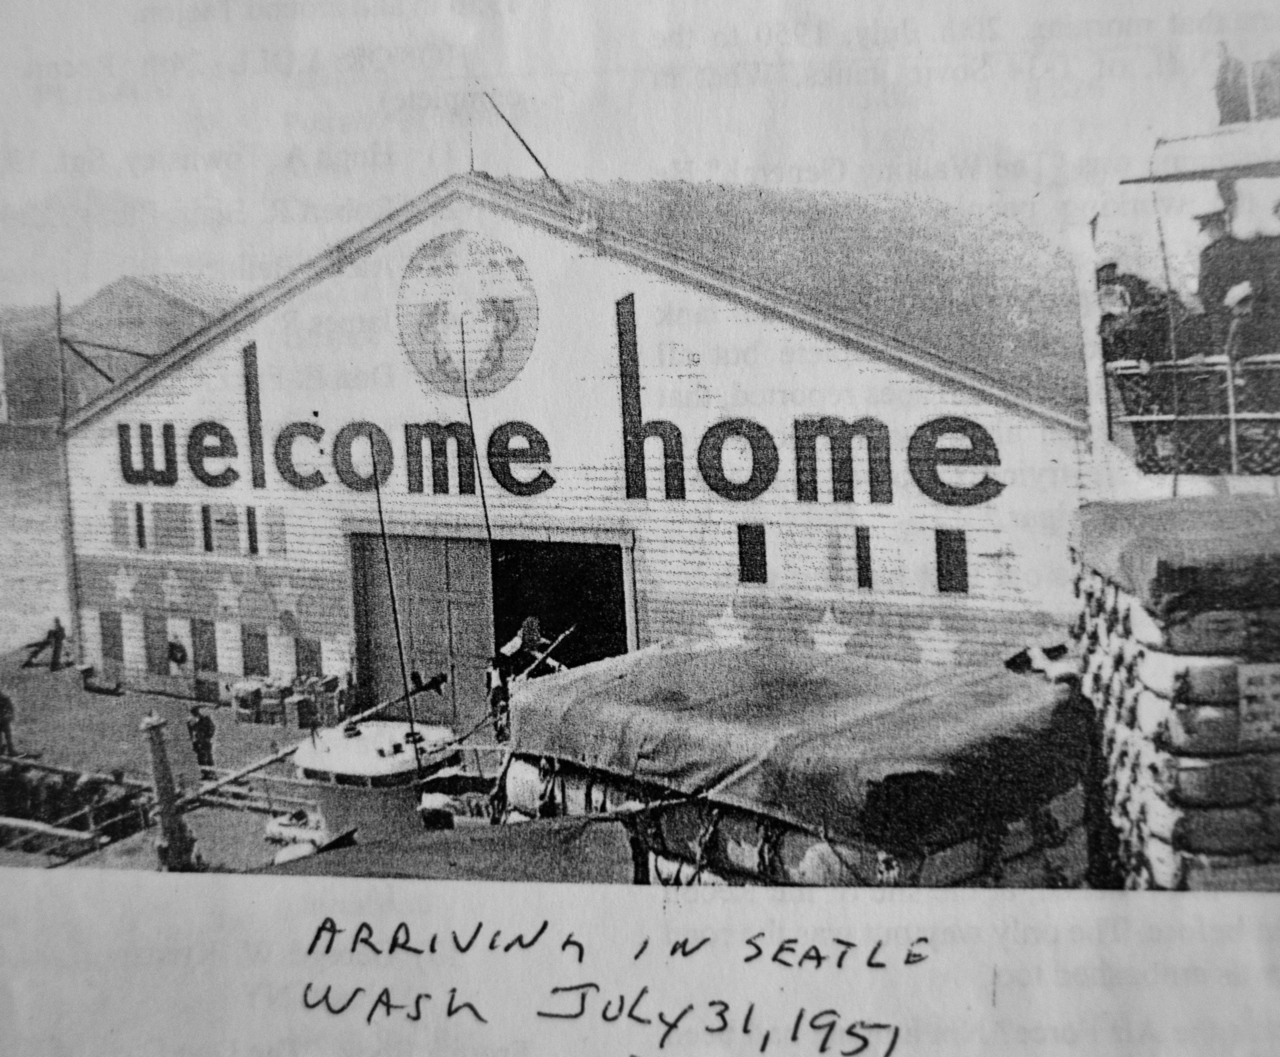 Arriving in Seattle, Washington: July 31, 1951